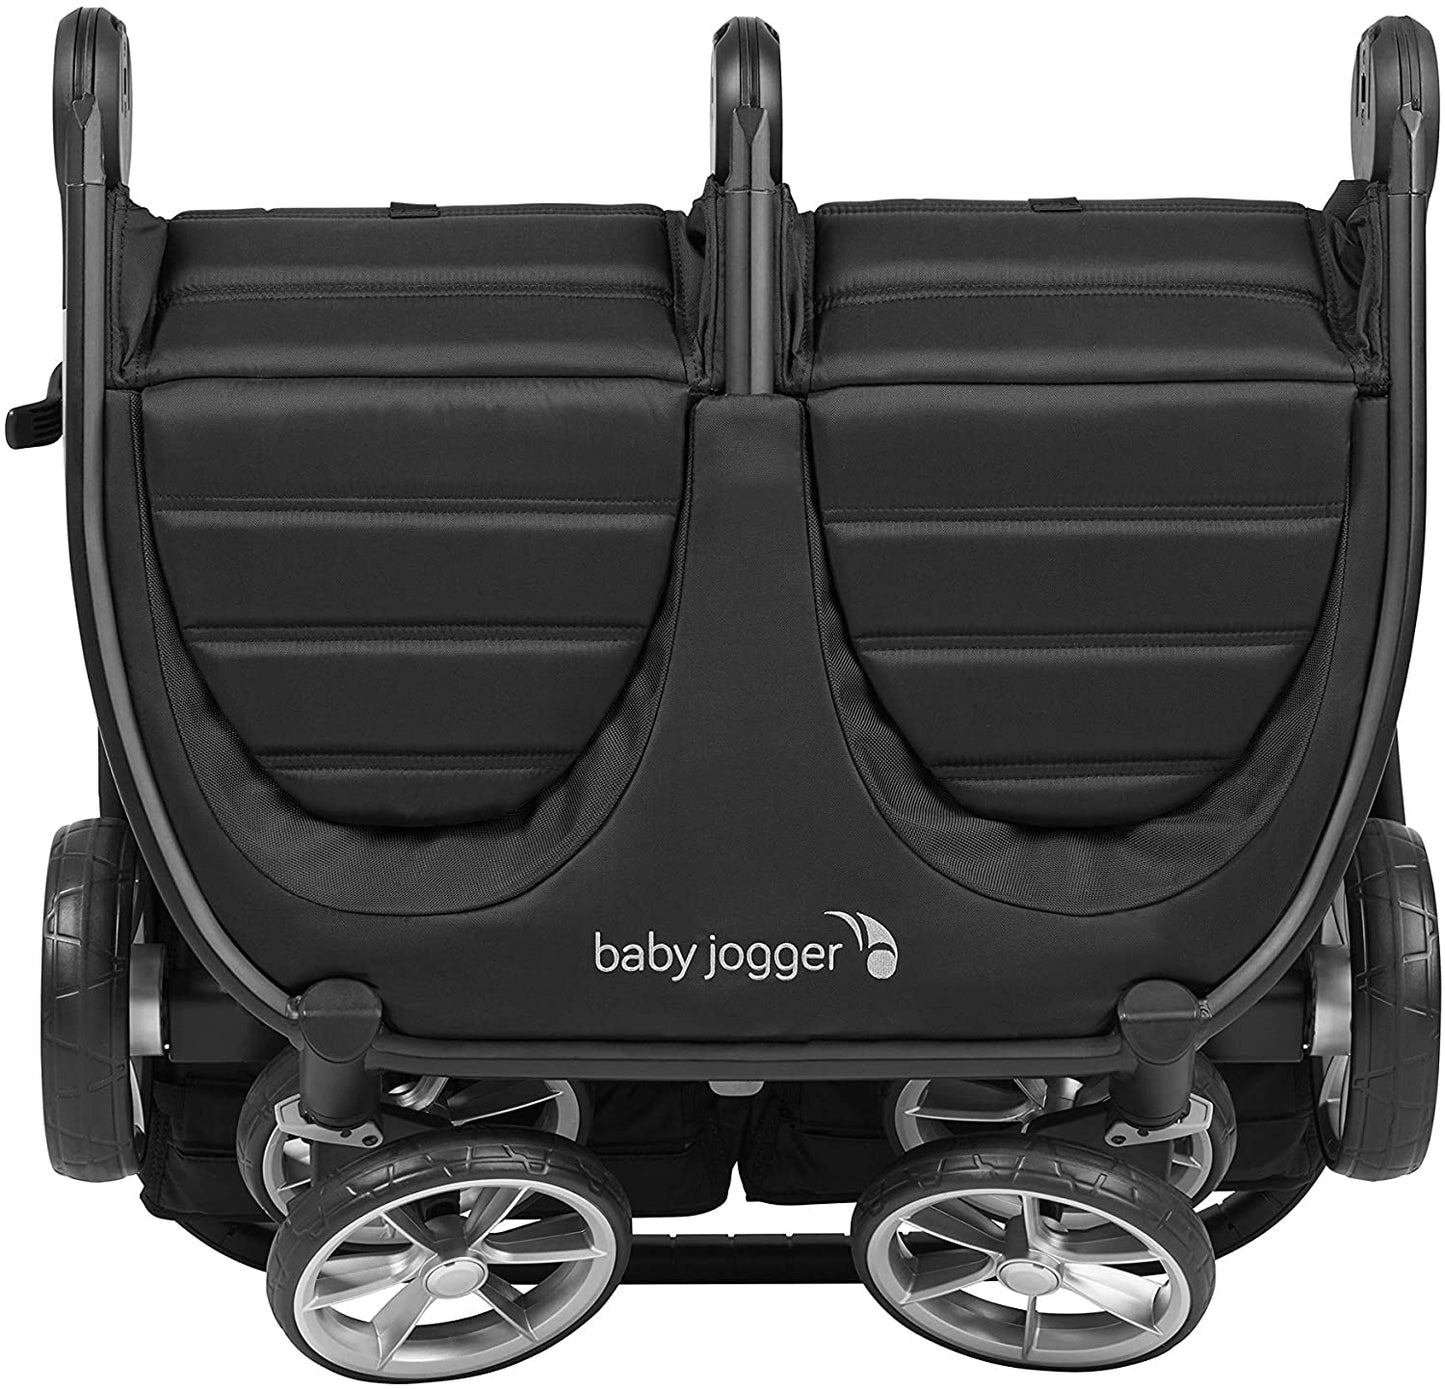 Baby Jogger City Duplo 2 Carrinho de Bebê para Gêmeos Duplo Leve, dobrável e compacto - Jet (preto)